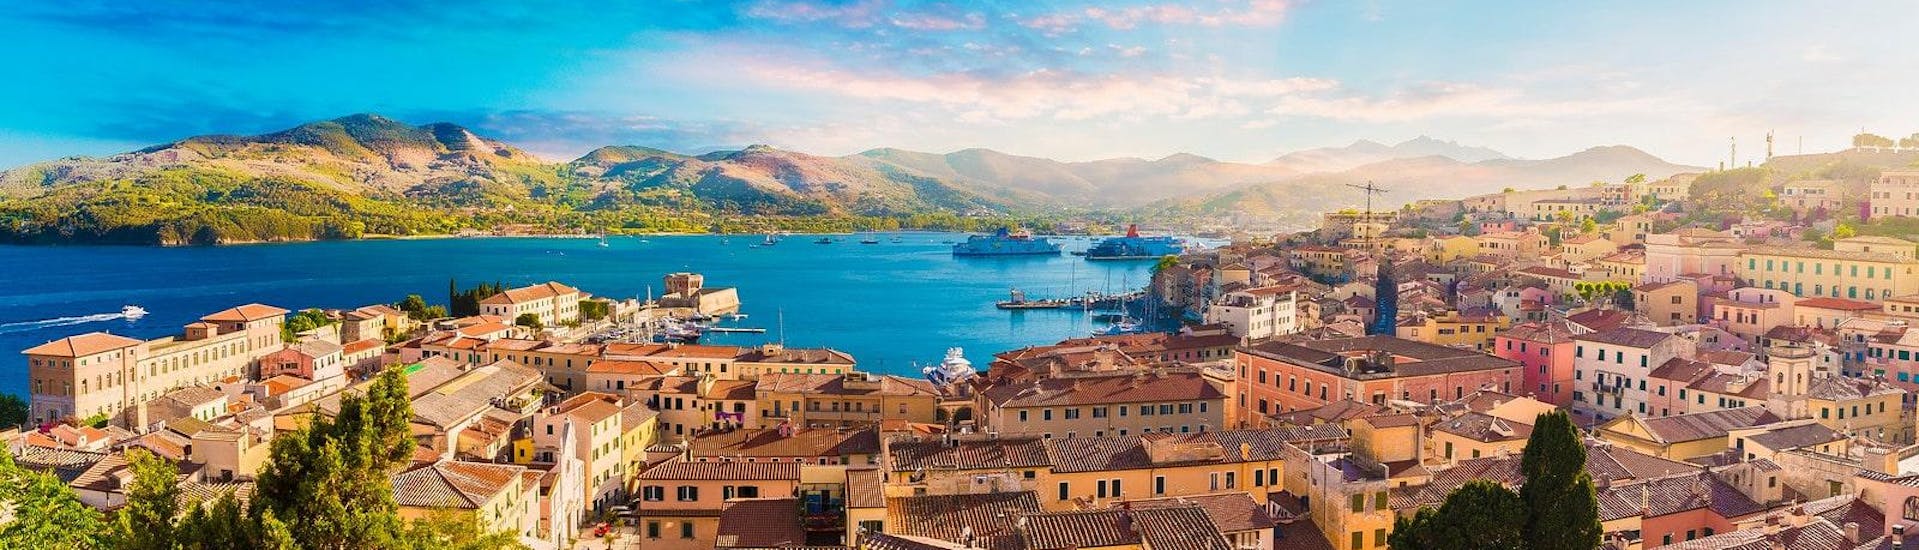 Vista del centro storico e del porto di Portoferraio, Isola d'Elba, Italia.